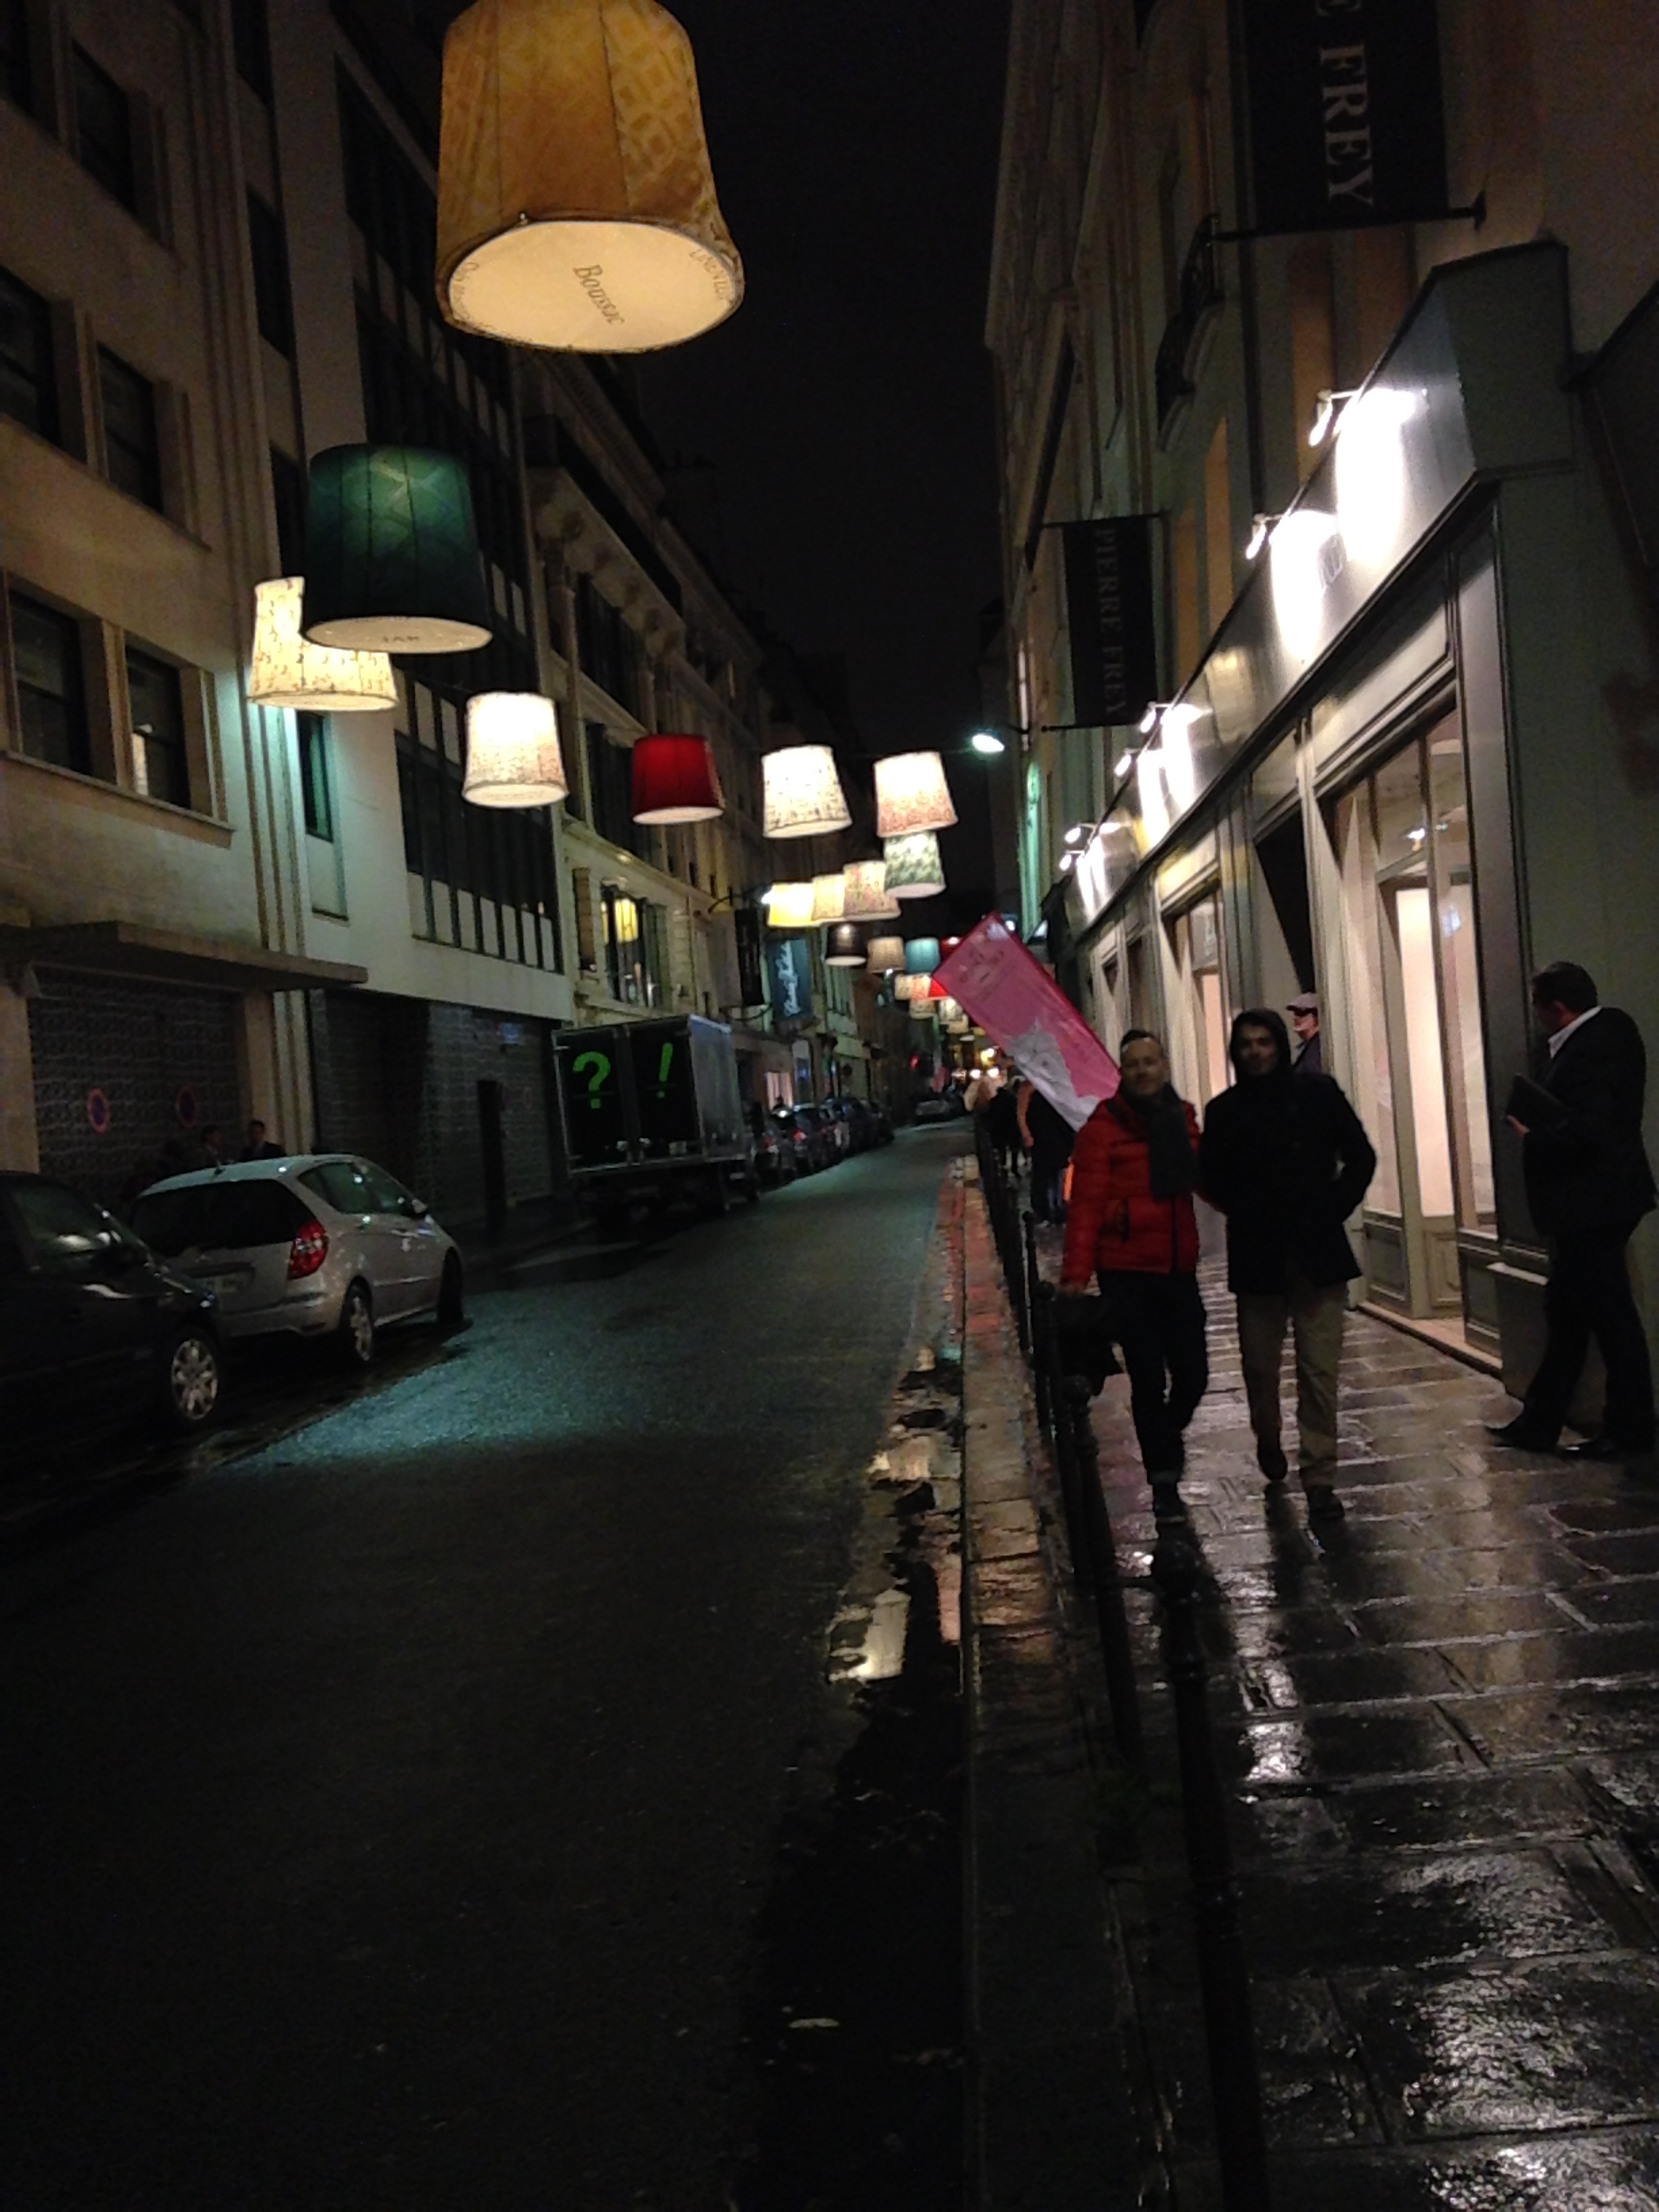 The-Rue-du-Mail-at-night.jpg